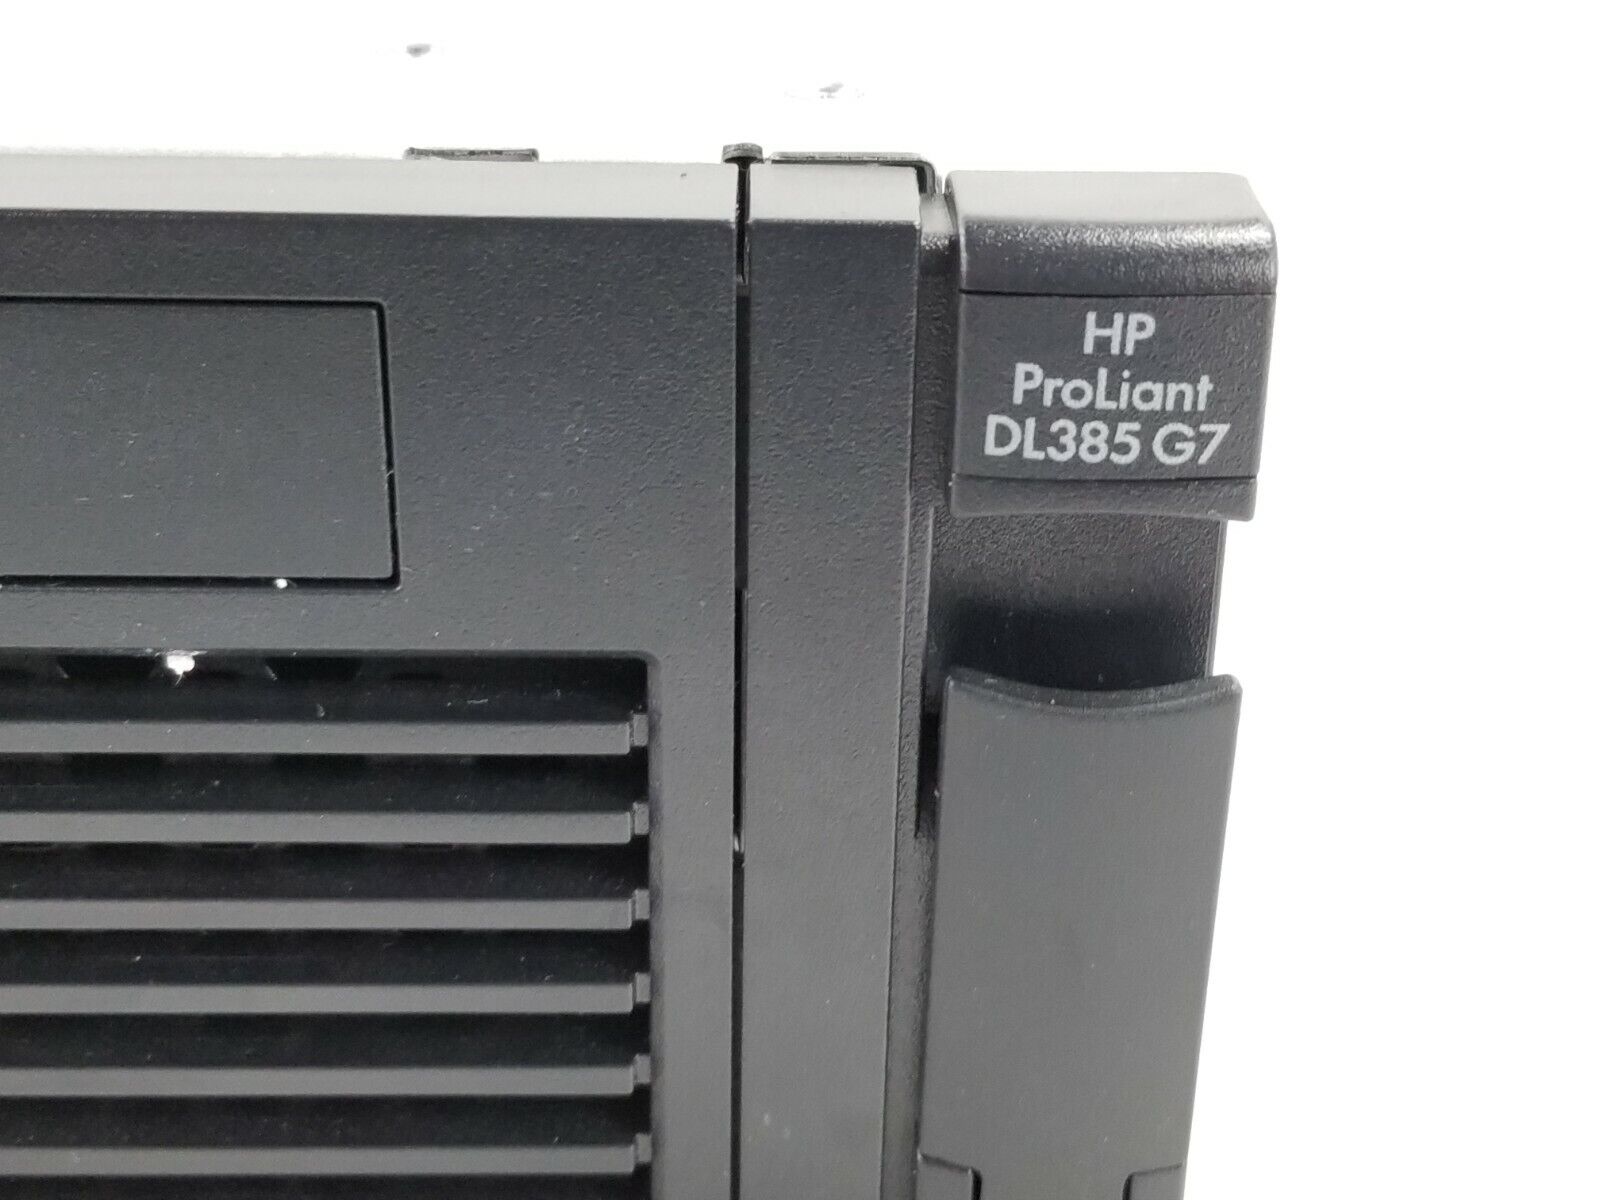 HP Proliant DL385 G7 2x AMD Optron 6176 2.3GHz 38GB RAM No HDD No OS